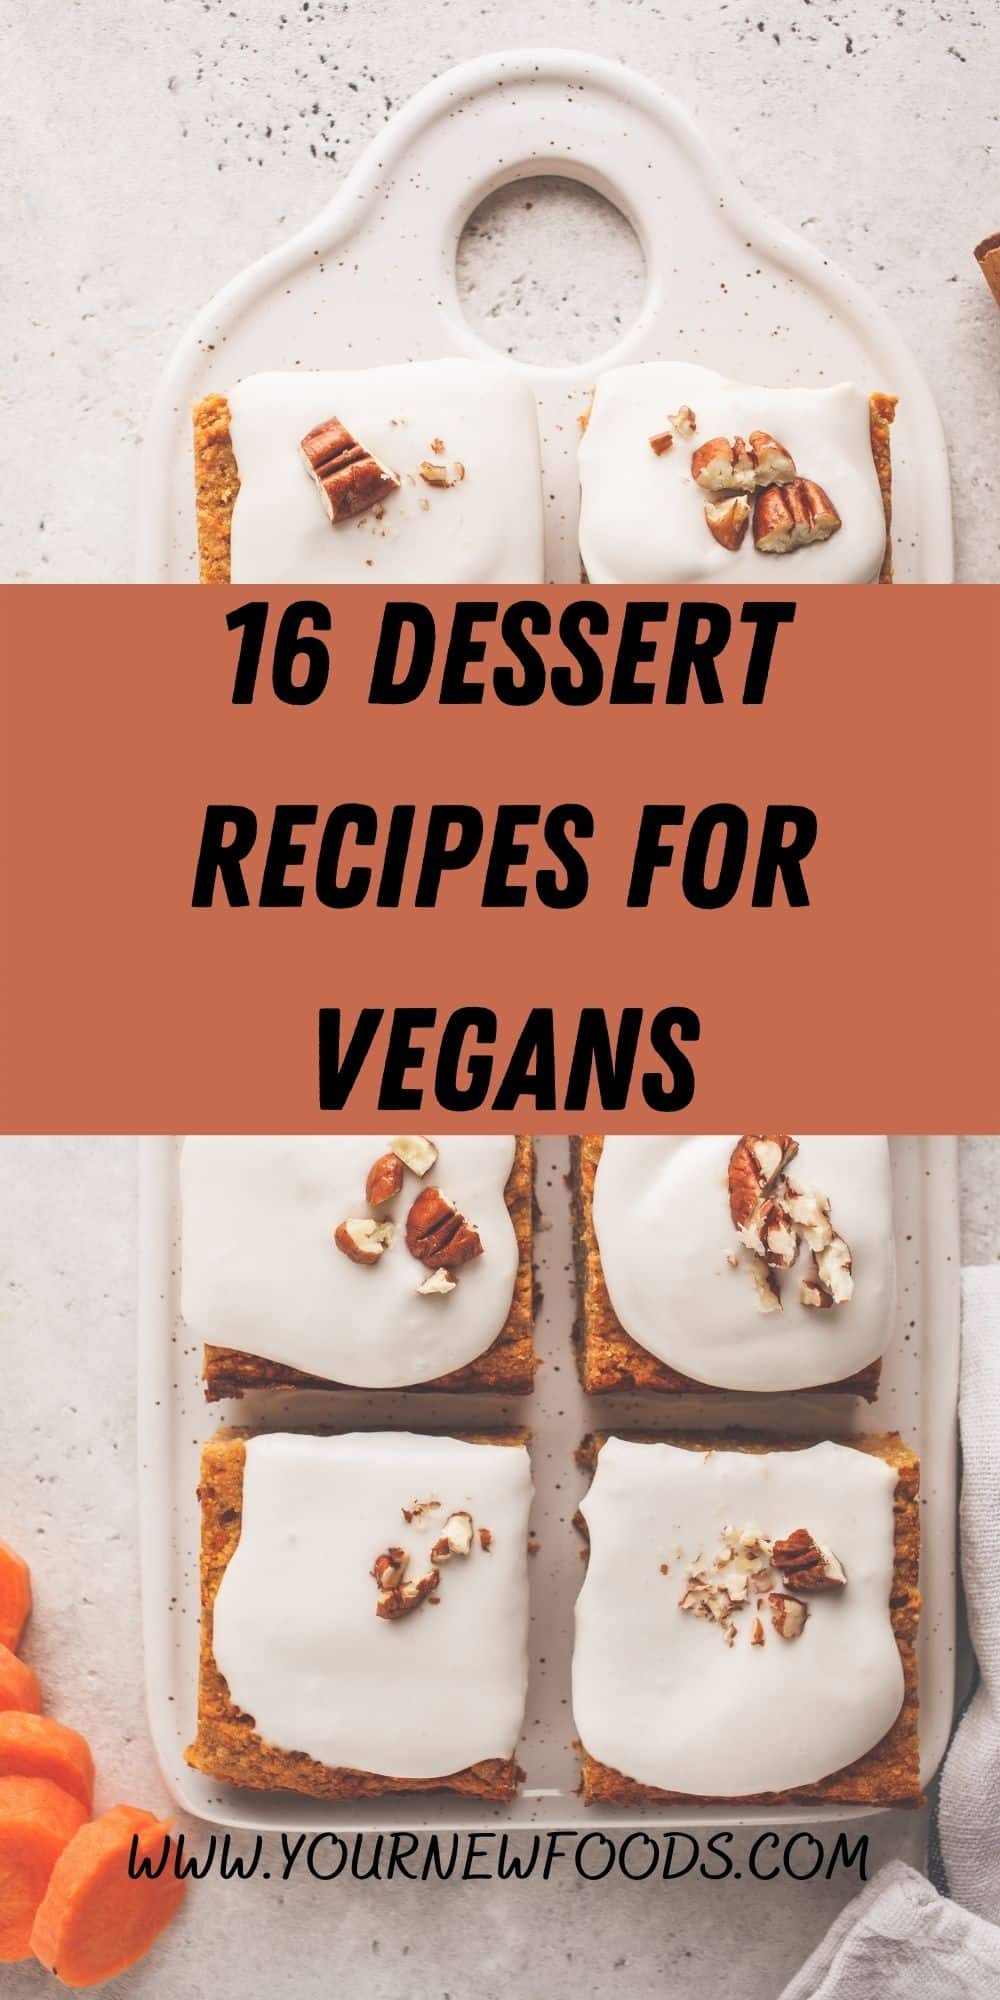 Dessert recipes for vegans